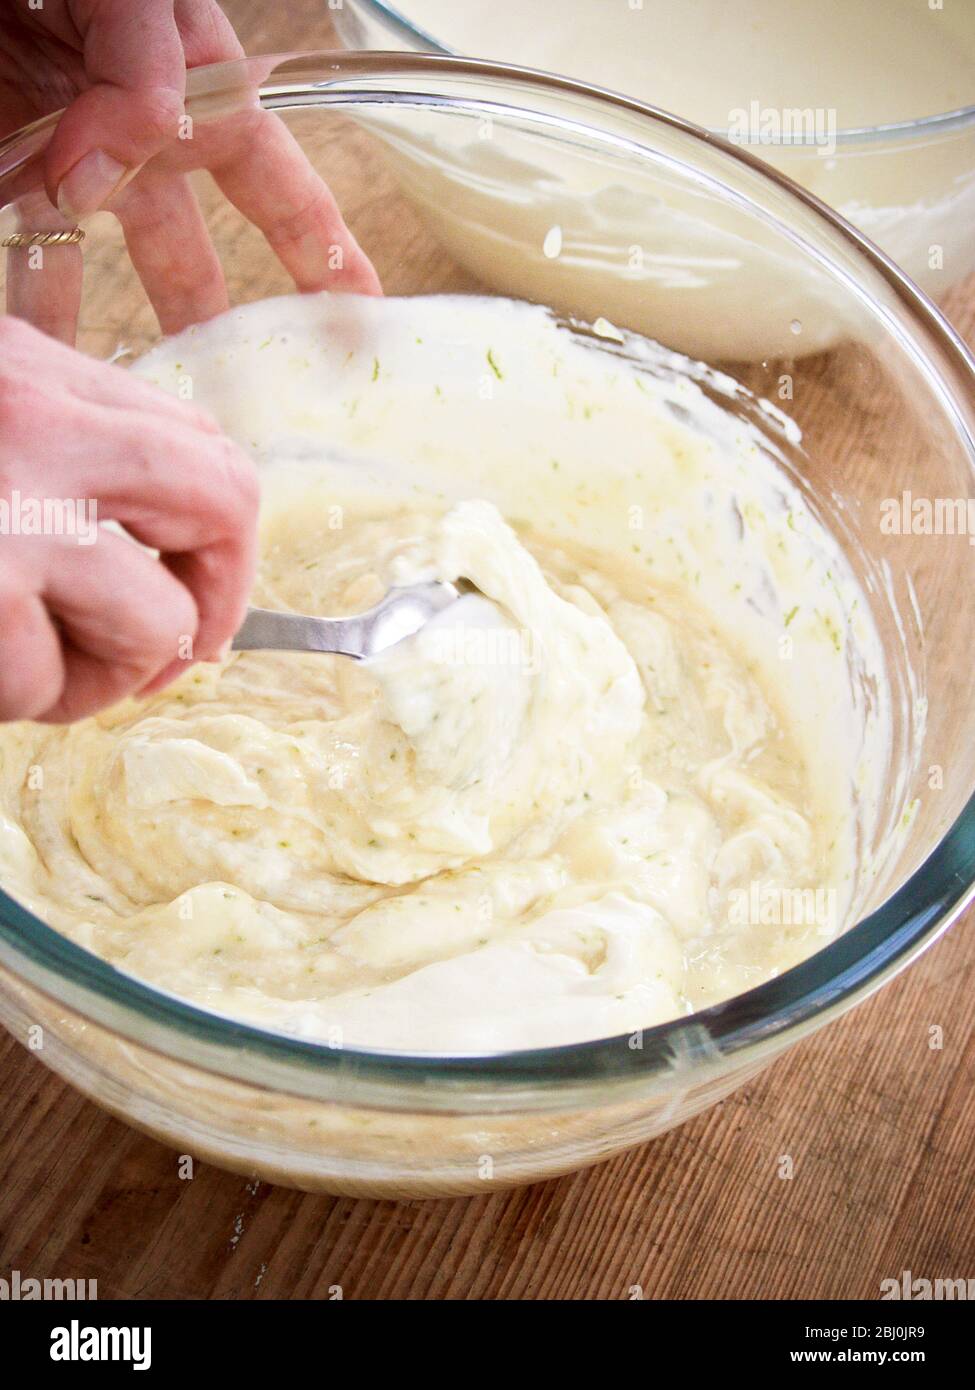 Mescolando la panna montata in crema di uova raffreddata e addensata con gelatina e scorza di lime per il dessert trifle. - Foto Stock